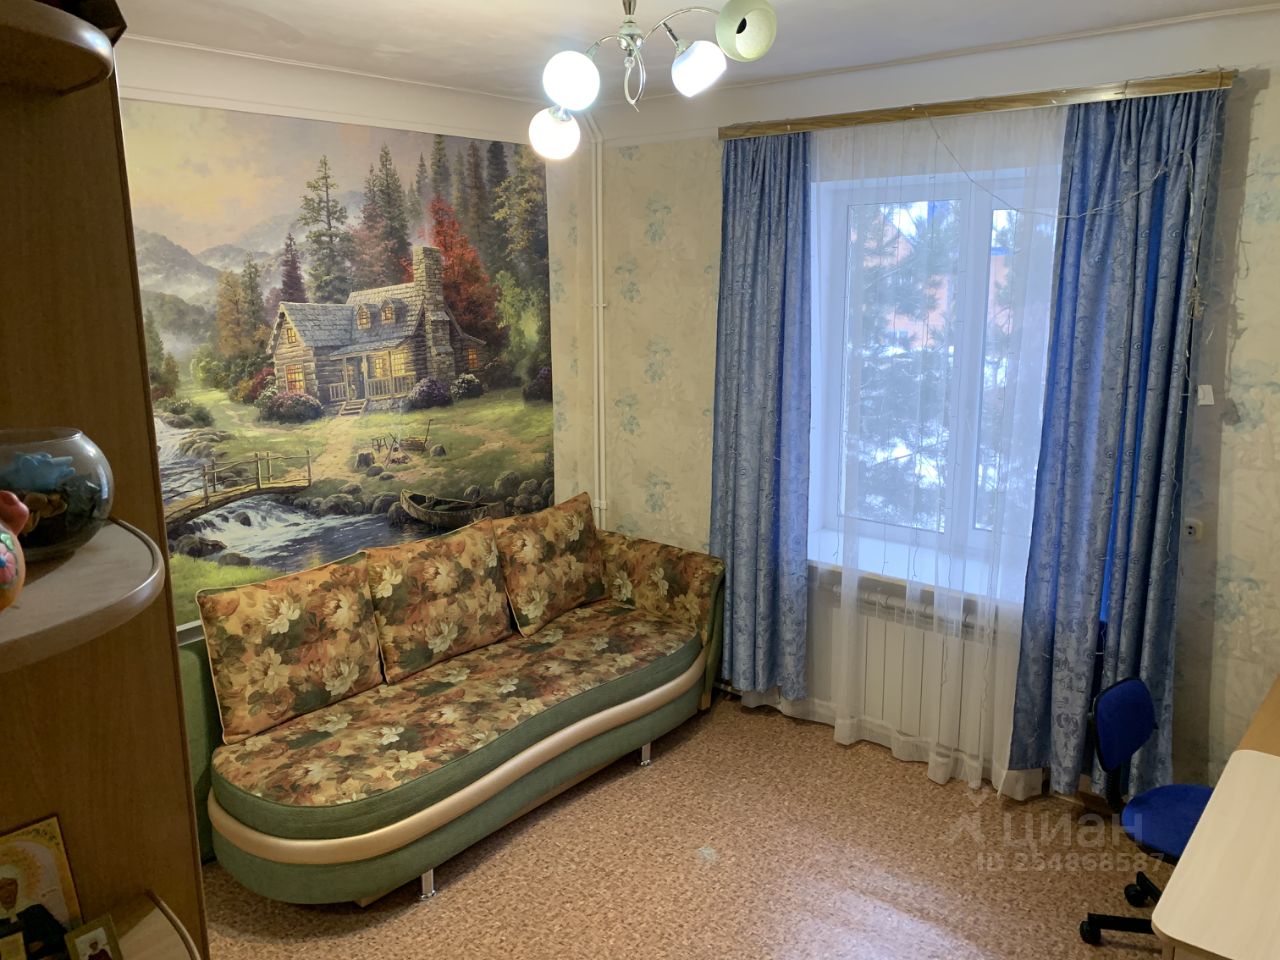 Купить квартиру в Омске 1 комнатную в Нефтяниках цена?